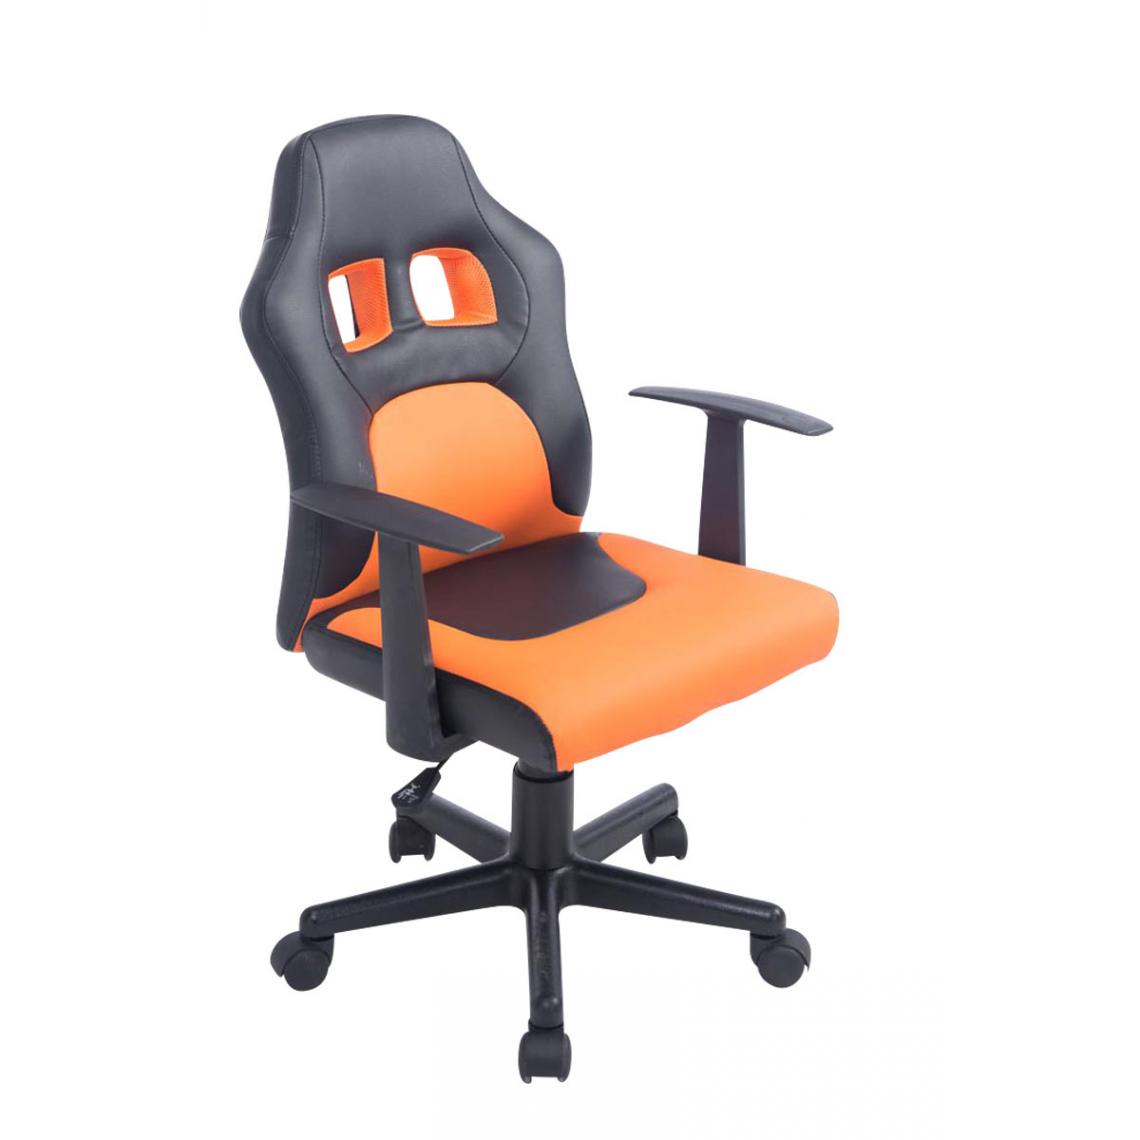 Icaverne - Admirable Chaise de bureau enfant collection Vaduz couleur noir / orange - Chaises